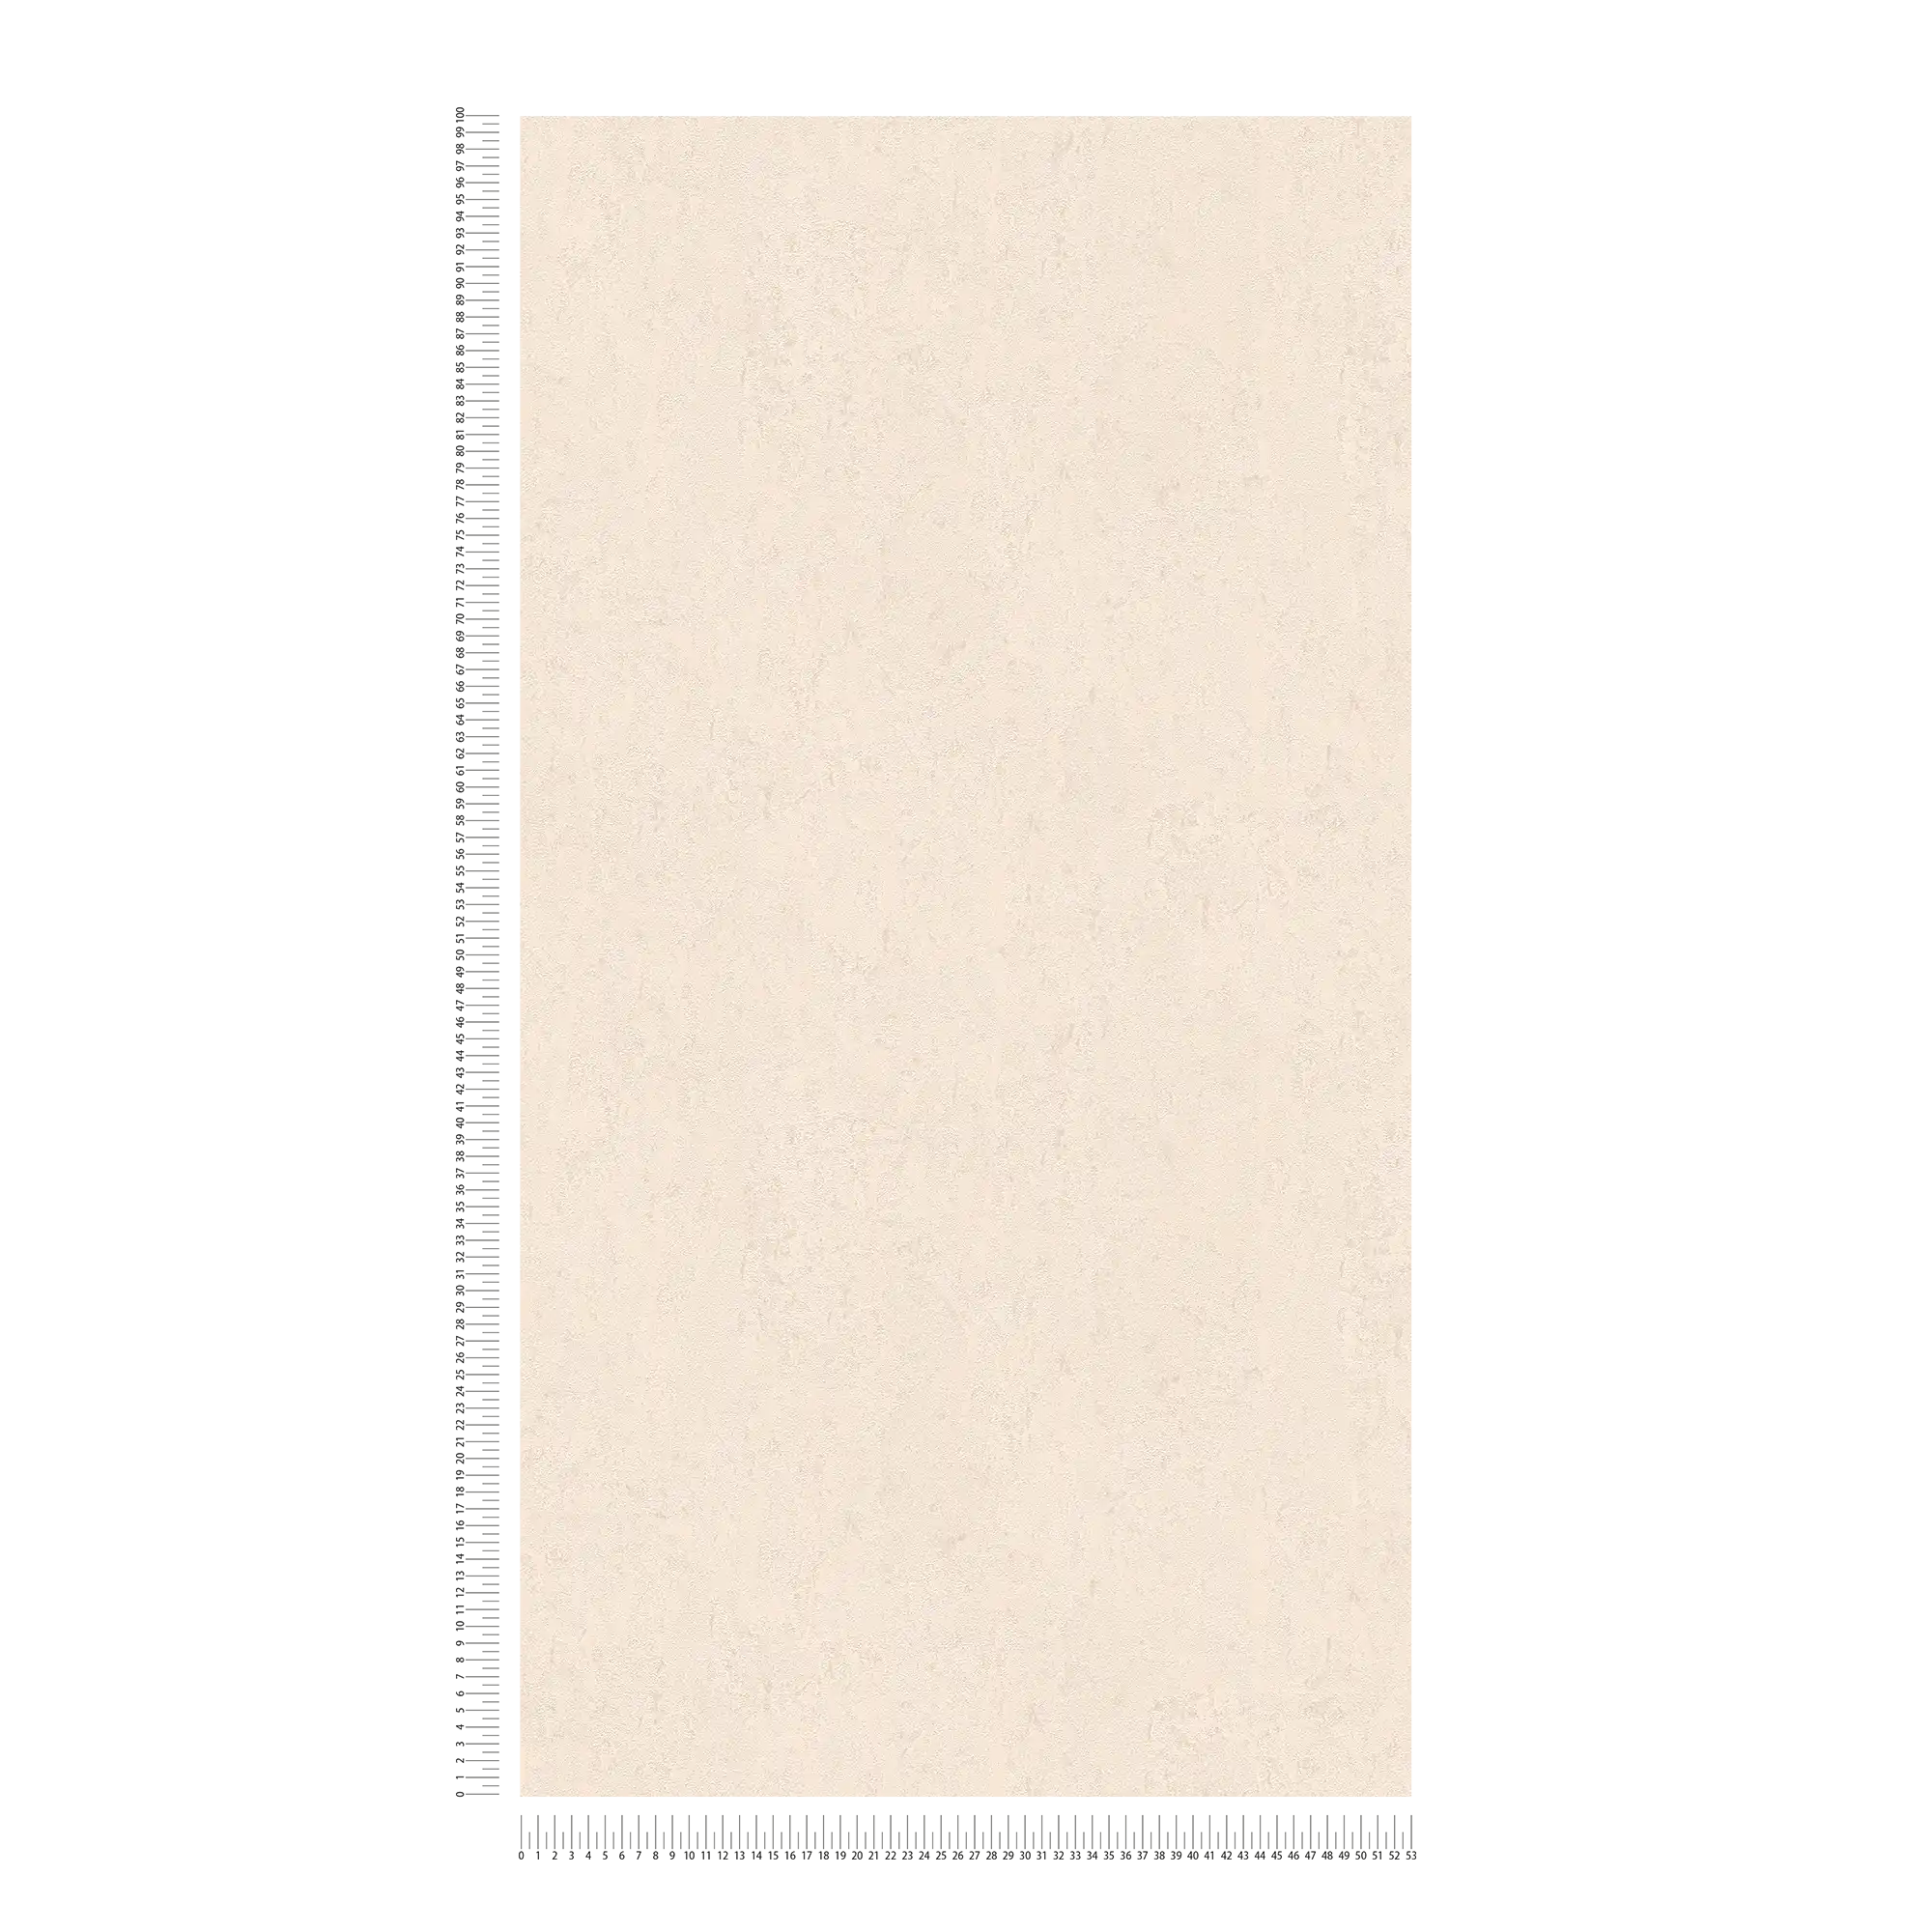             Carta da parati metallizzata beige lucida con struttura in rilievo
        